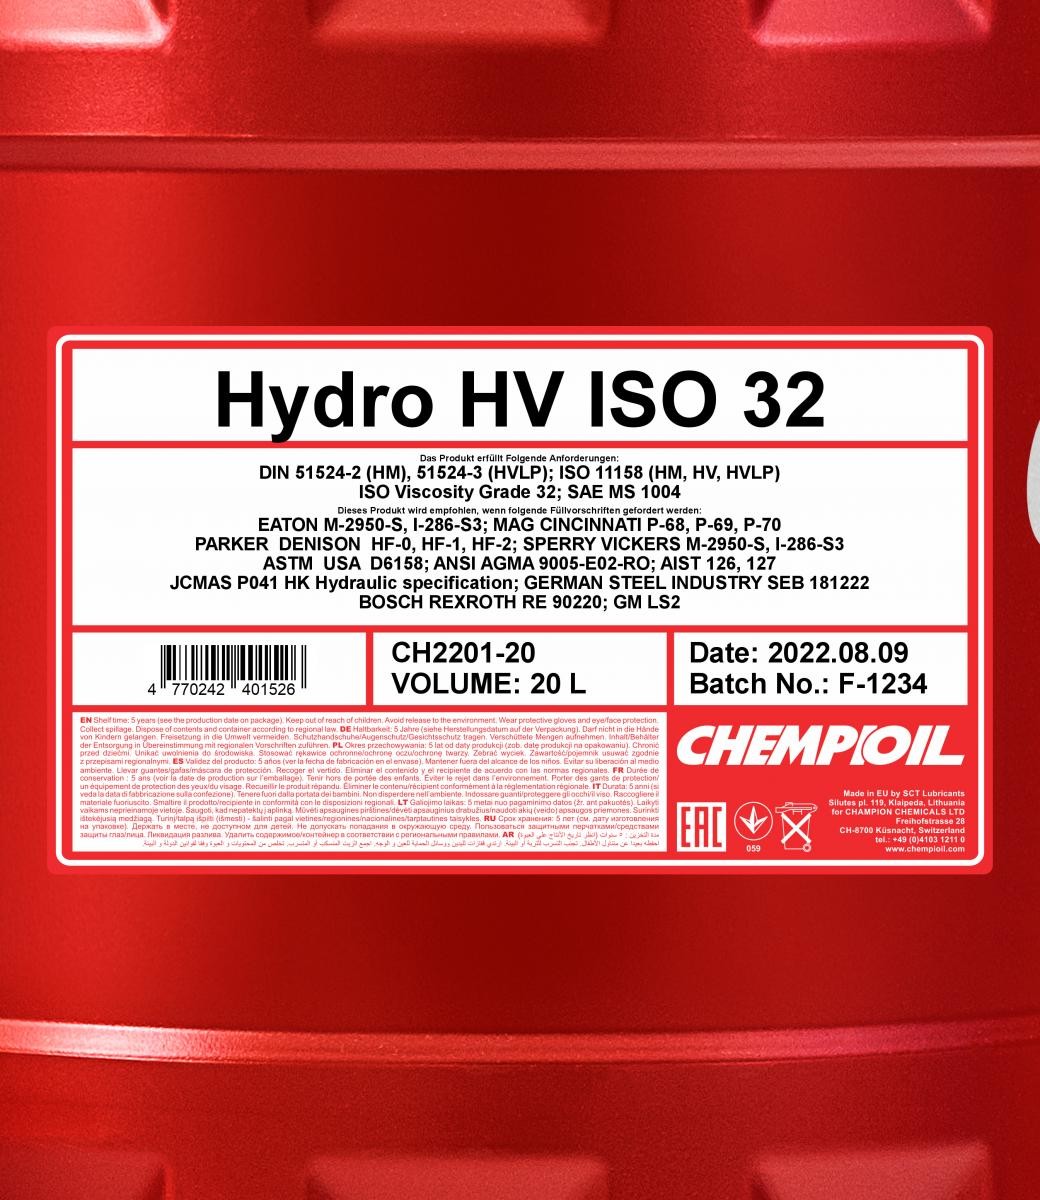 CHEMPIOIL Hydraulic fluid CH2201-20